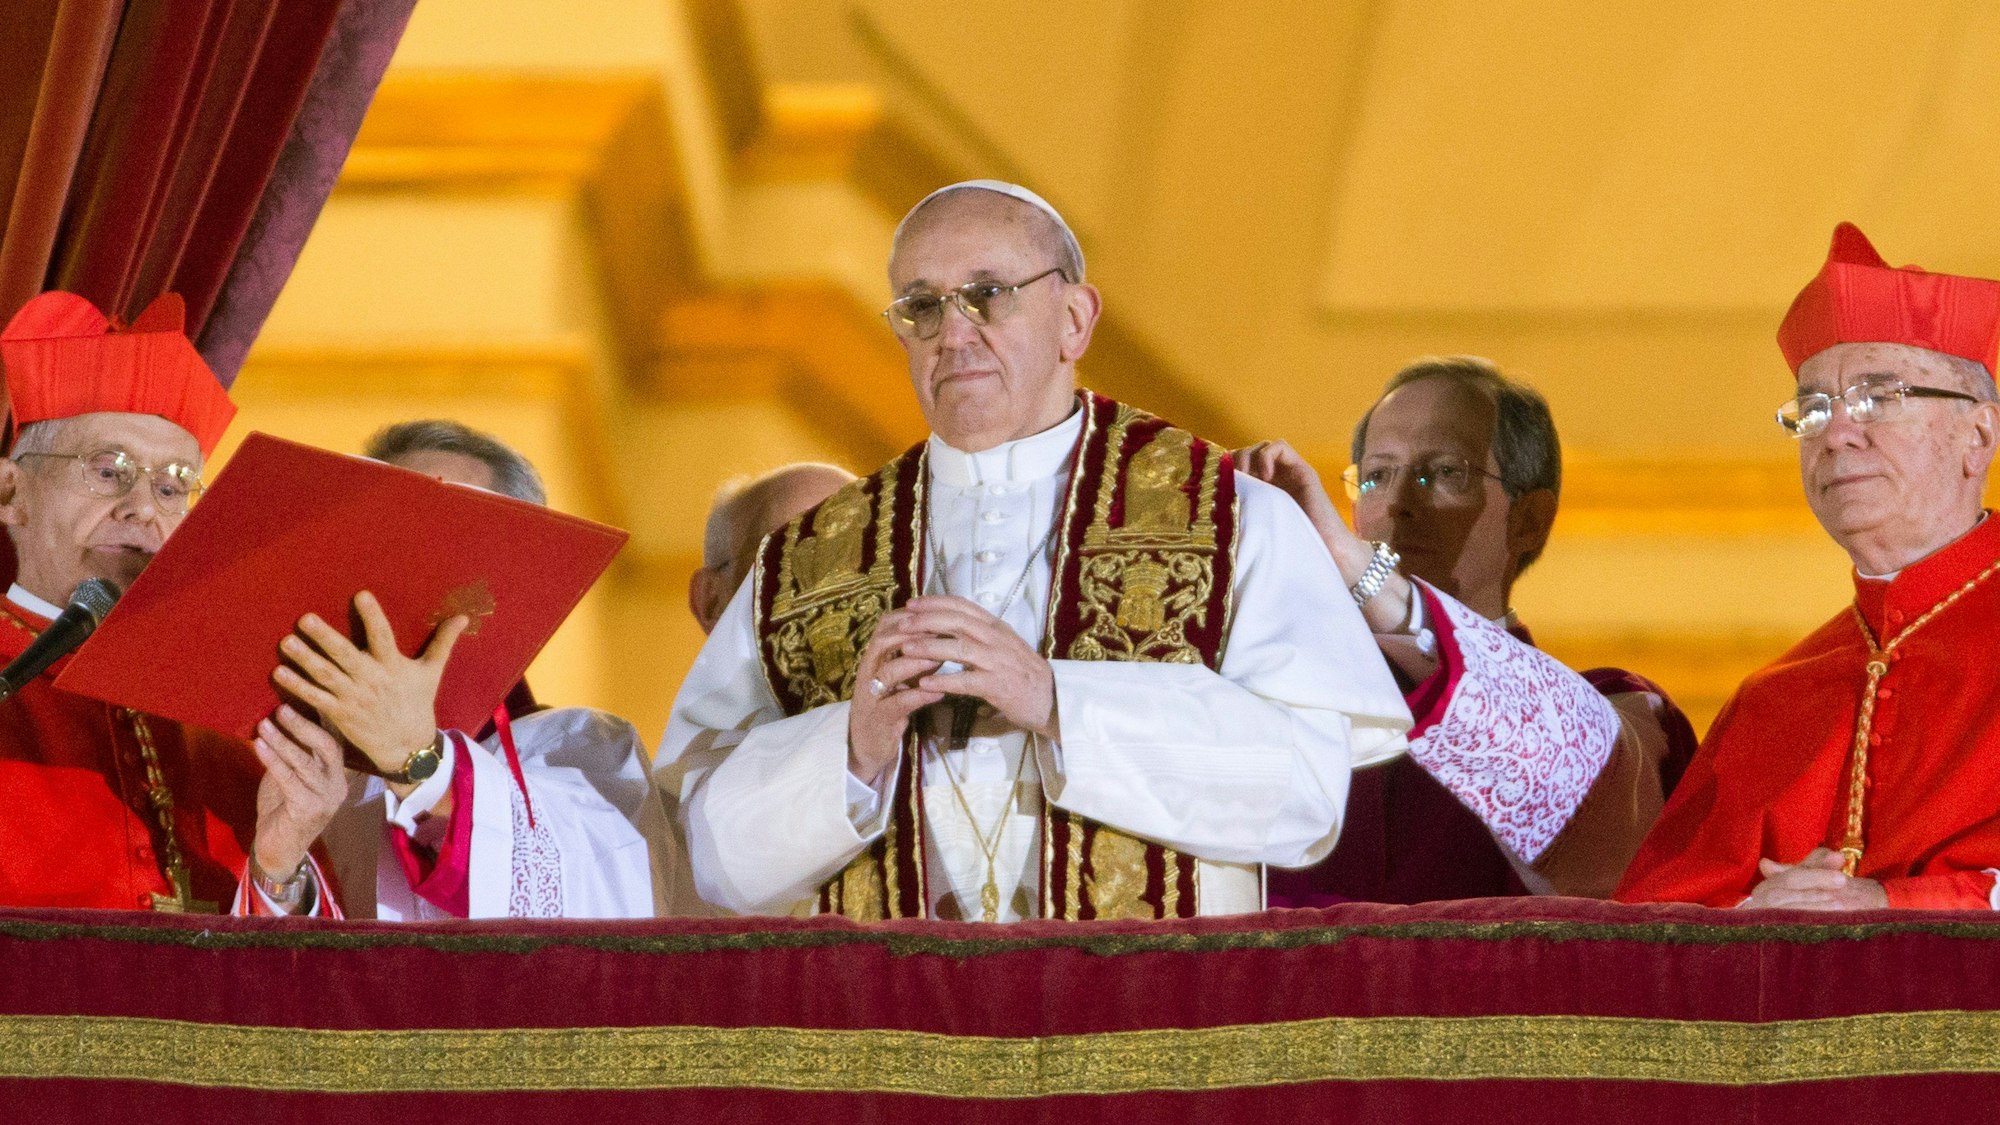 Papst Franziskus (Mitte) auf einem Archivfoto am Abend seiner Wahl am 13. März. Er steht mit zwei Kardinälen an seiner Seite auf dem Balkon des Petersdoms in Rom.